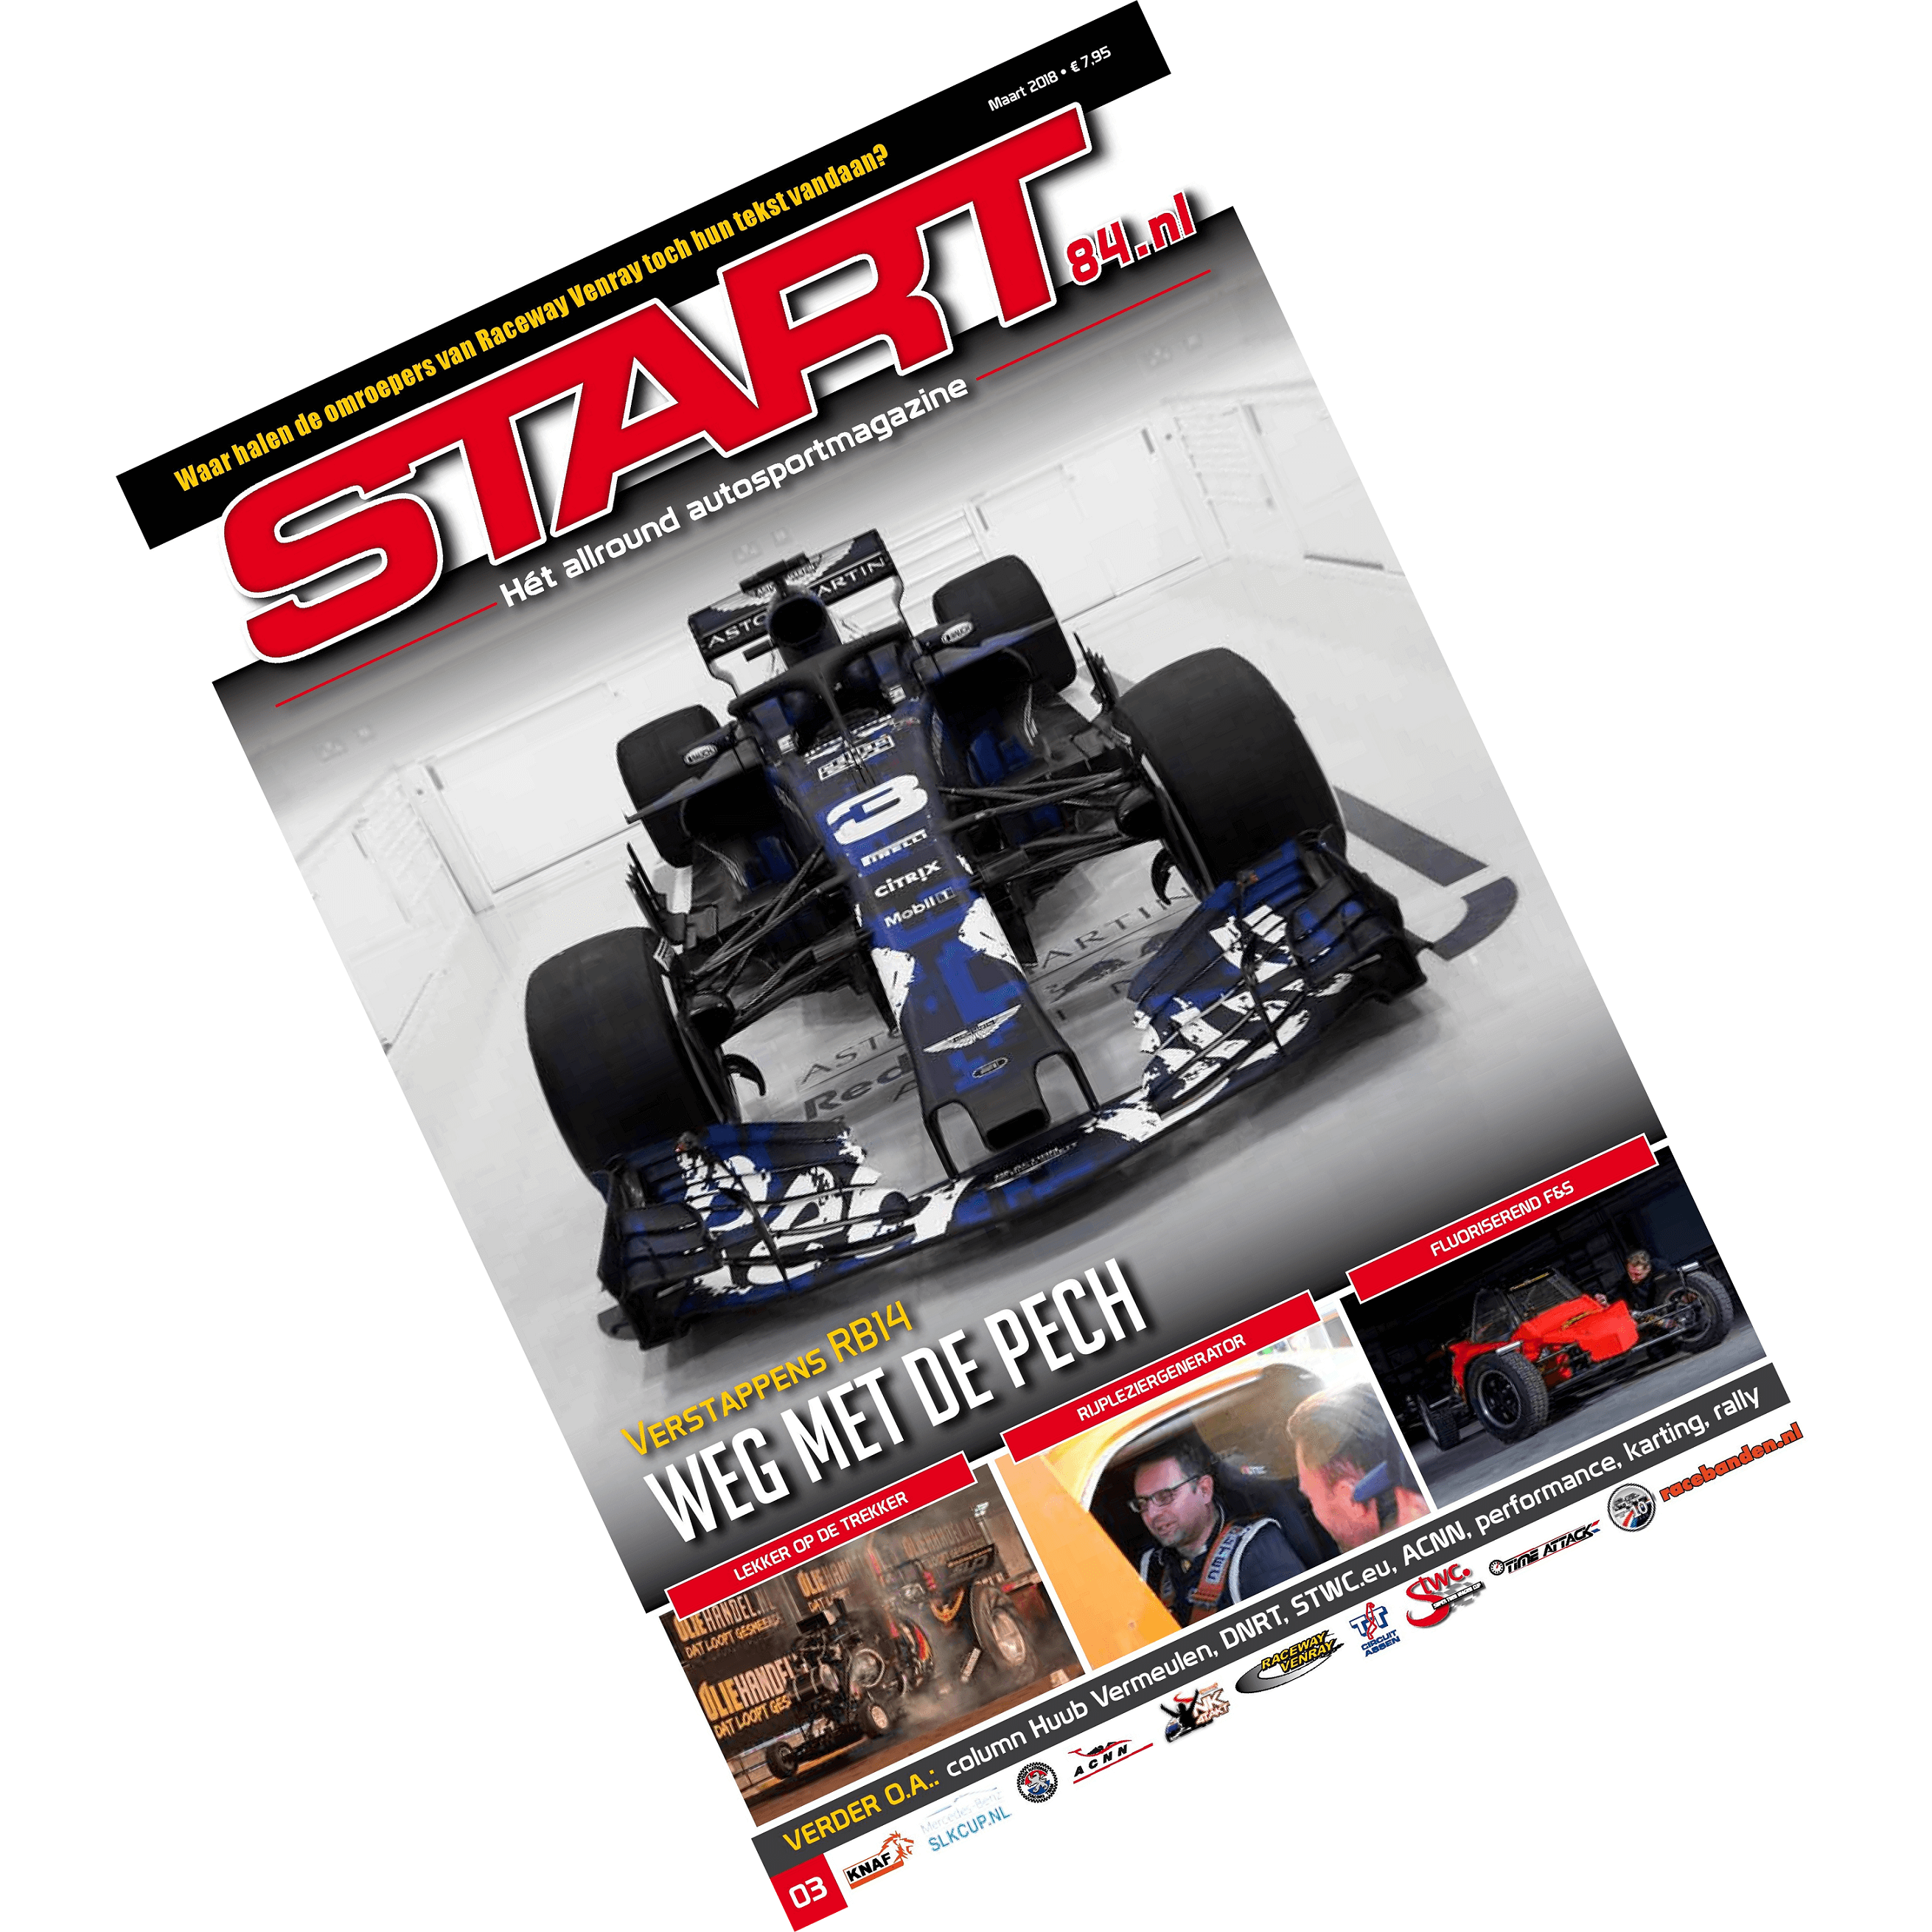 Cover van autosportmagazine Start 84 van maart 2018 met daarin bijdragen van Ralph Stoove